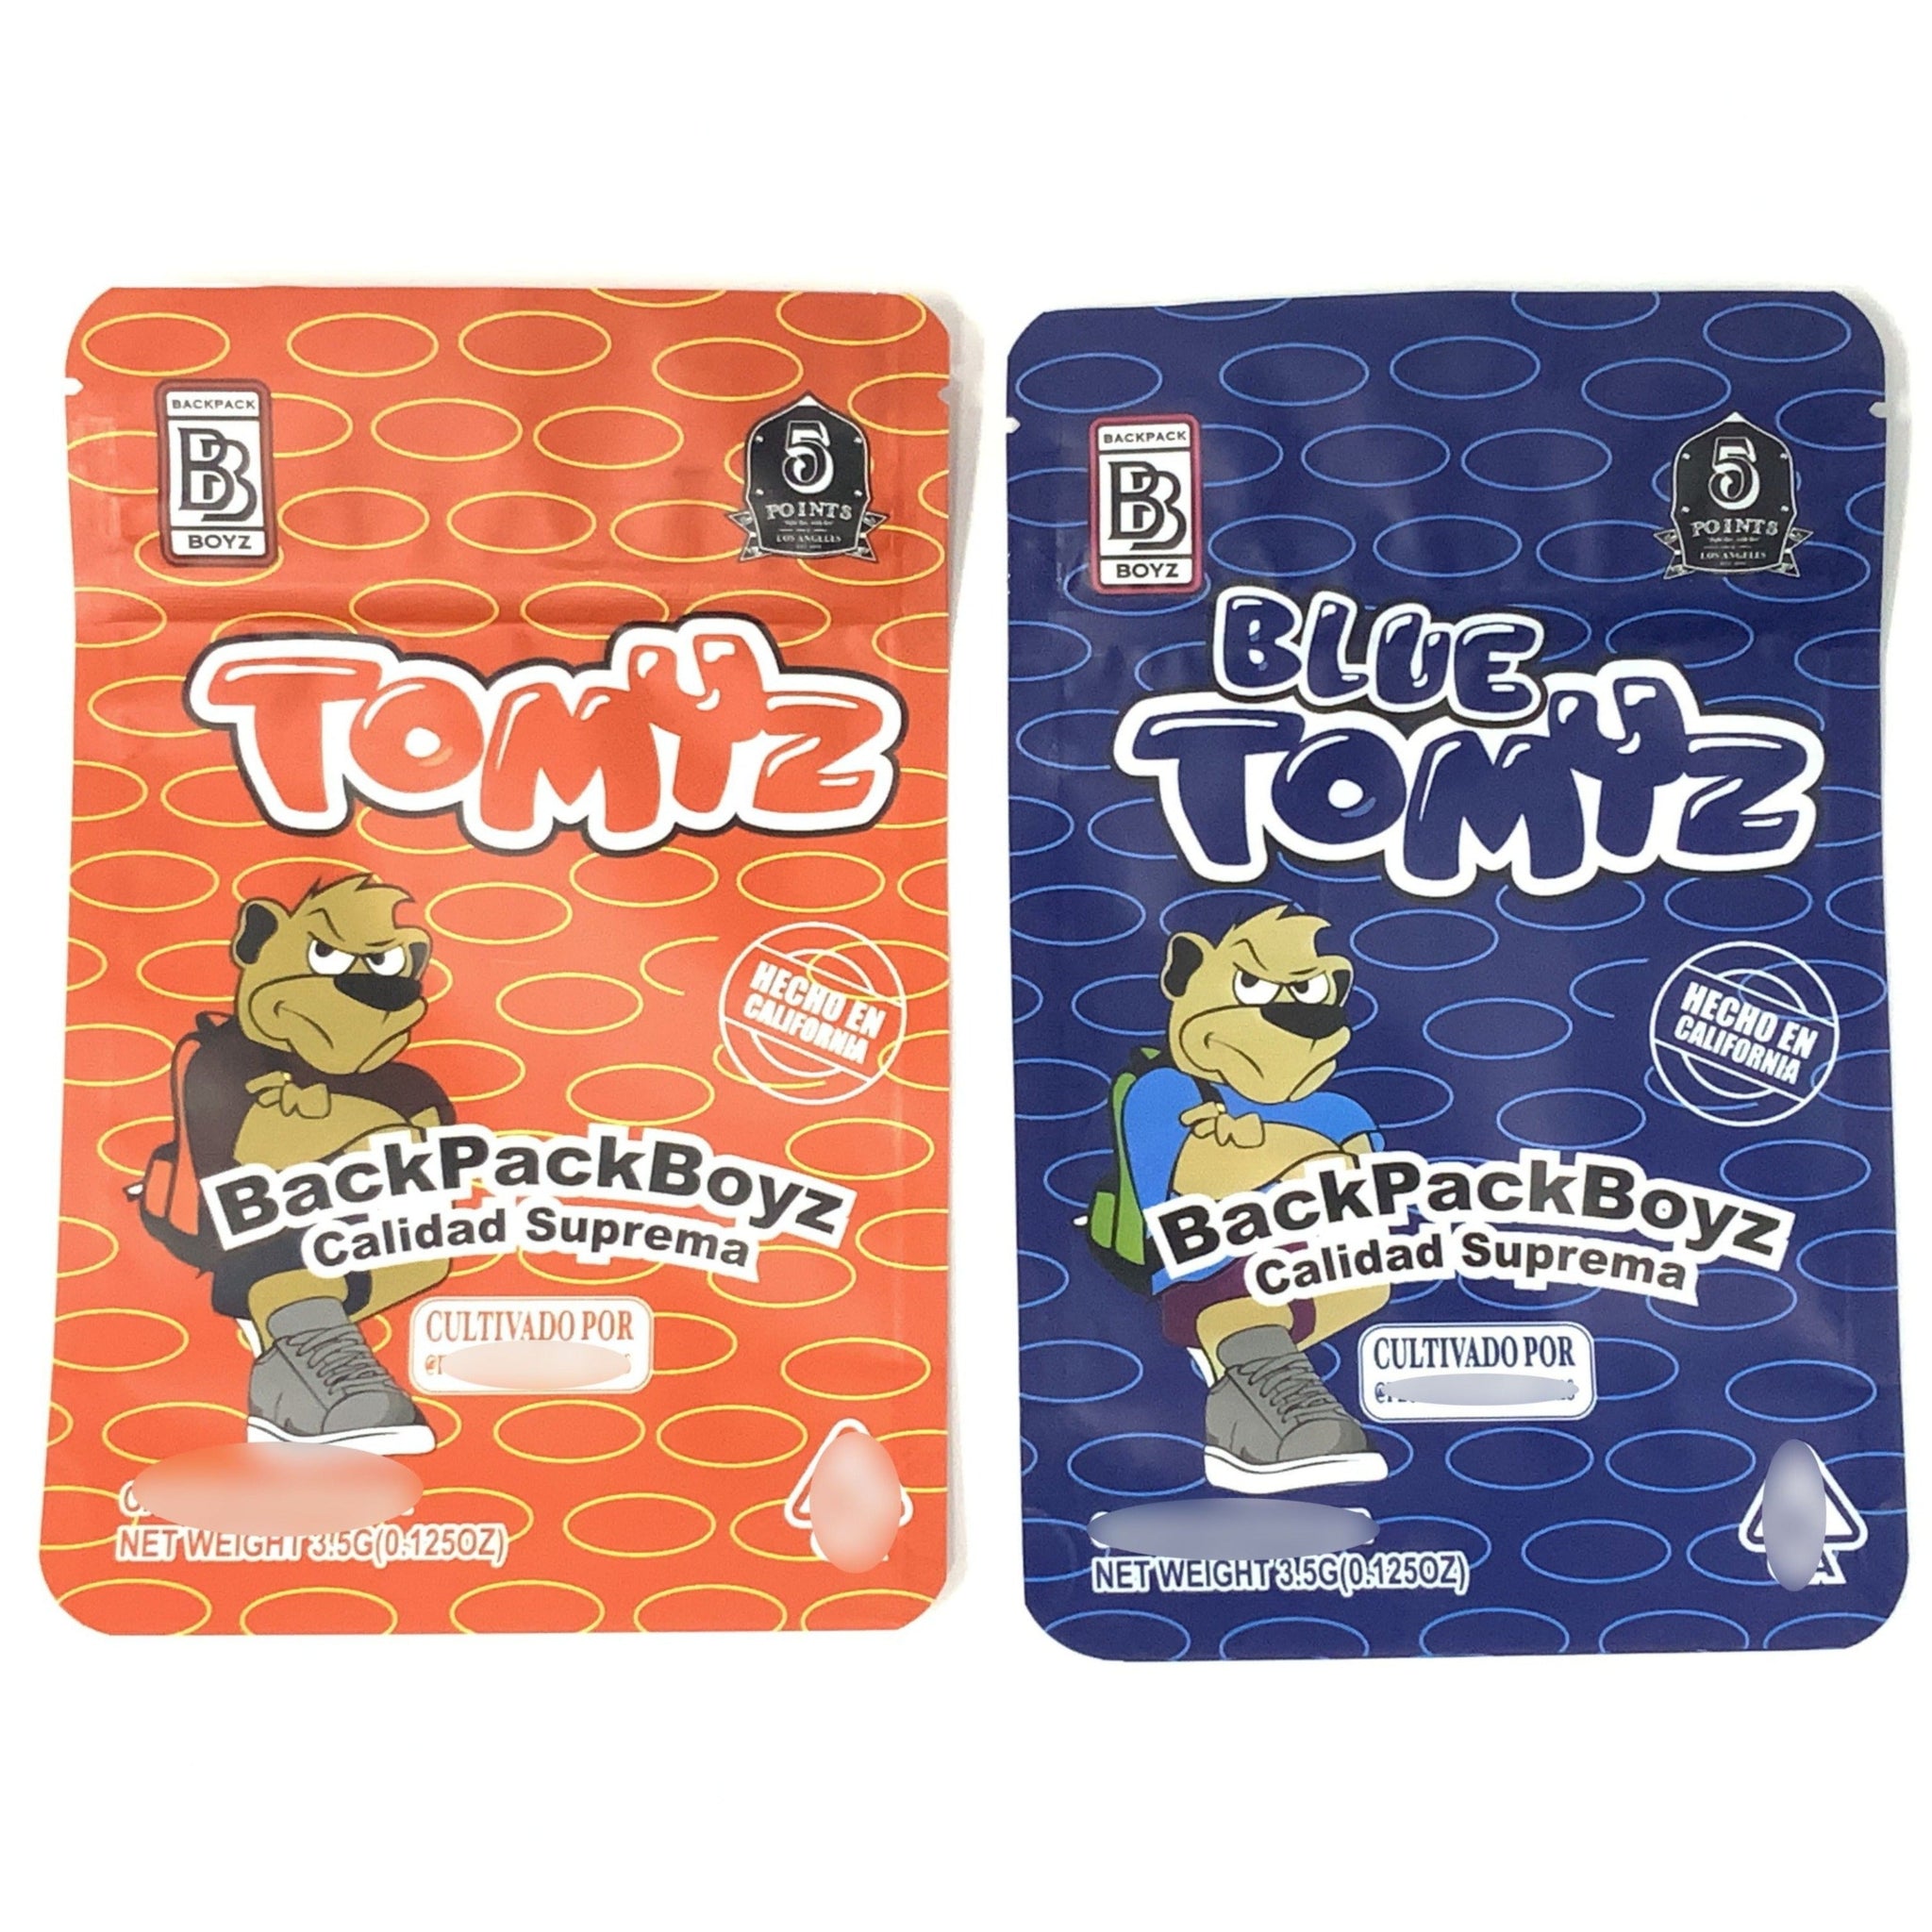 Blue/Red TOMYZ BackPack Boyz 3.5G Mylar Bags | Mylar Bag Food Storage 